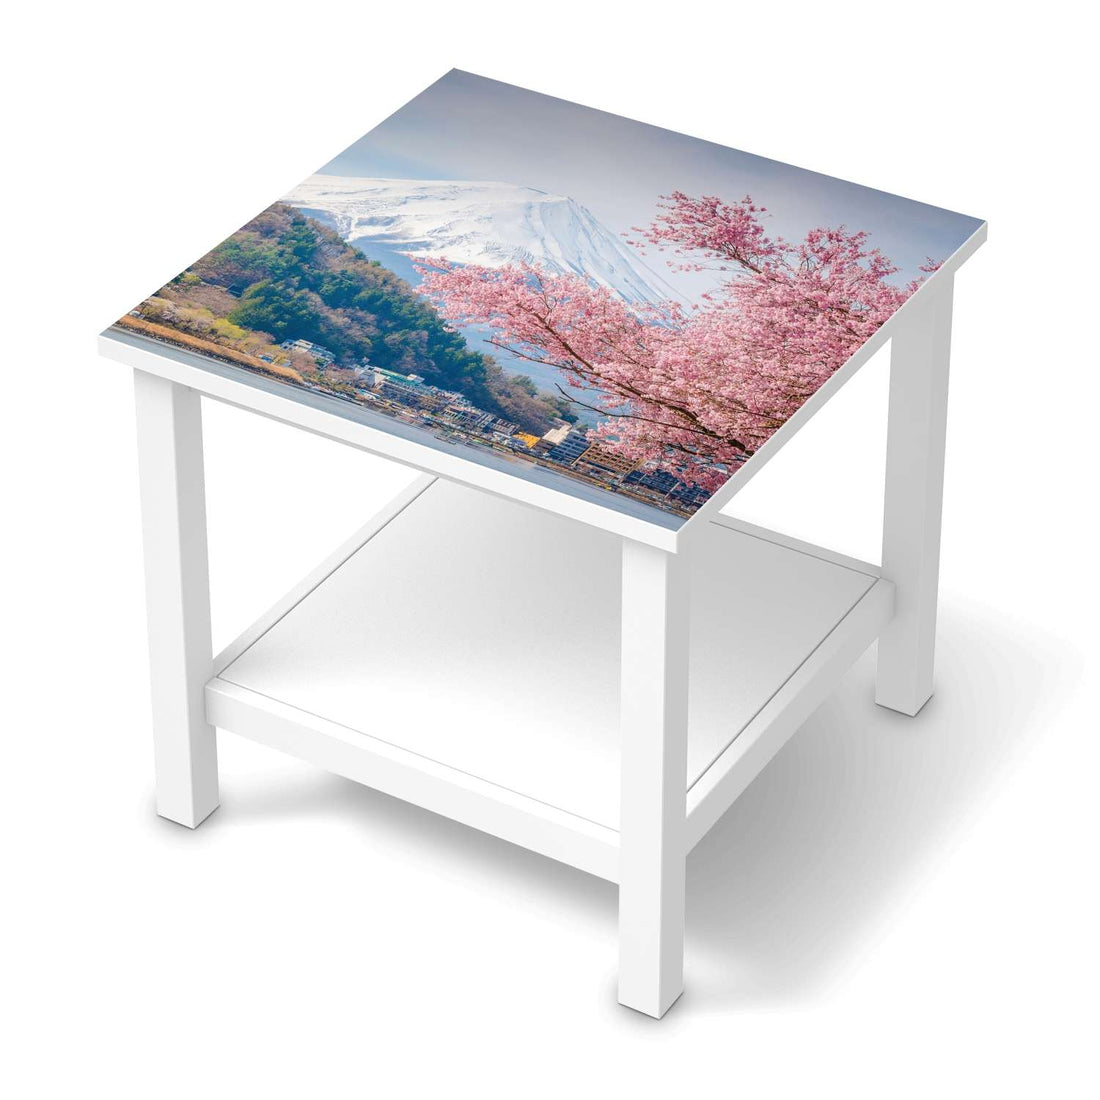 Möbel Klebefolie Mount Fuji - IKEA Hemnes Beistelltisch 55x55 cm  - weiss